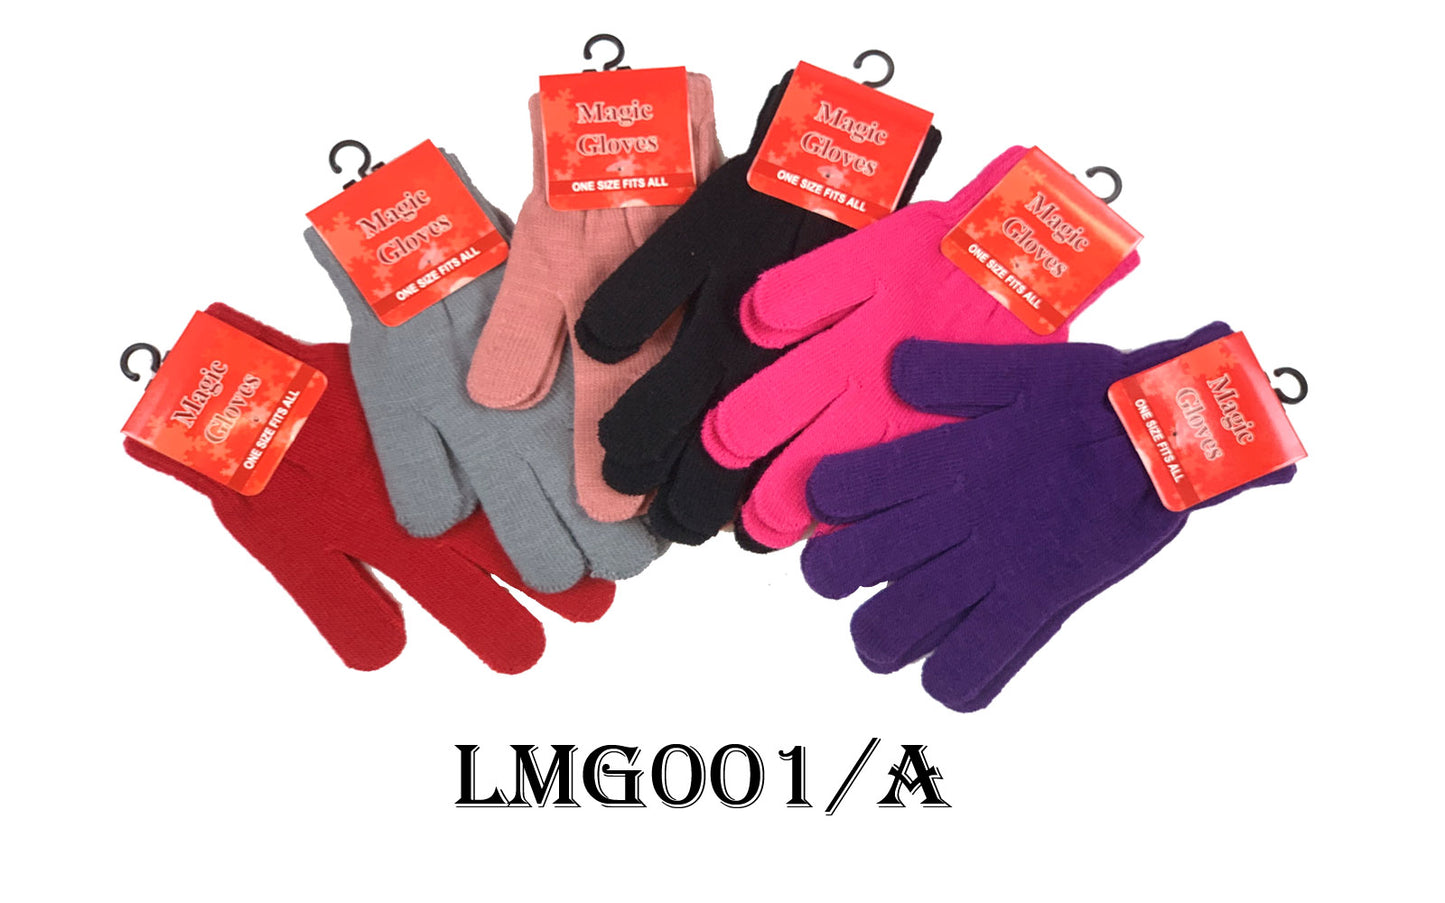 Ladies' Magic Glove